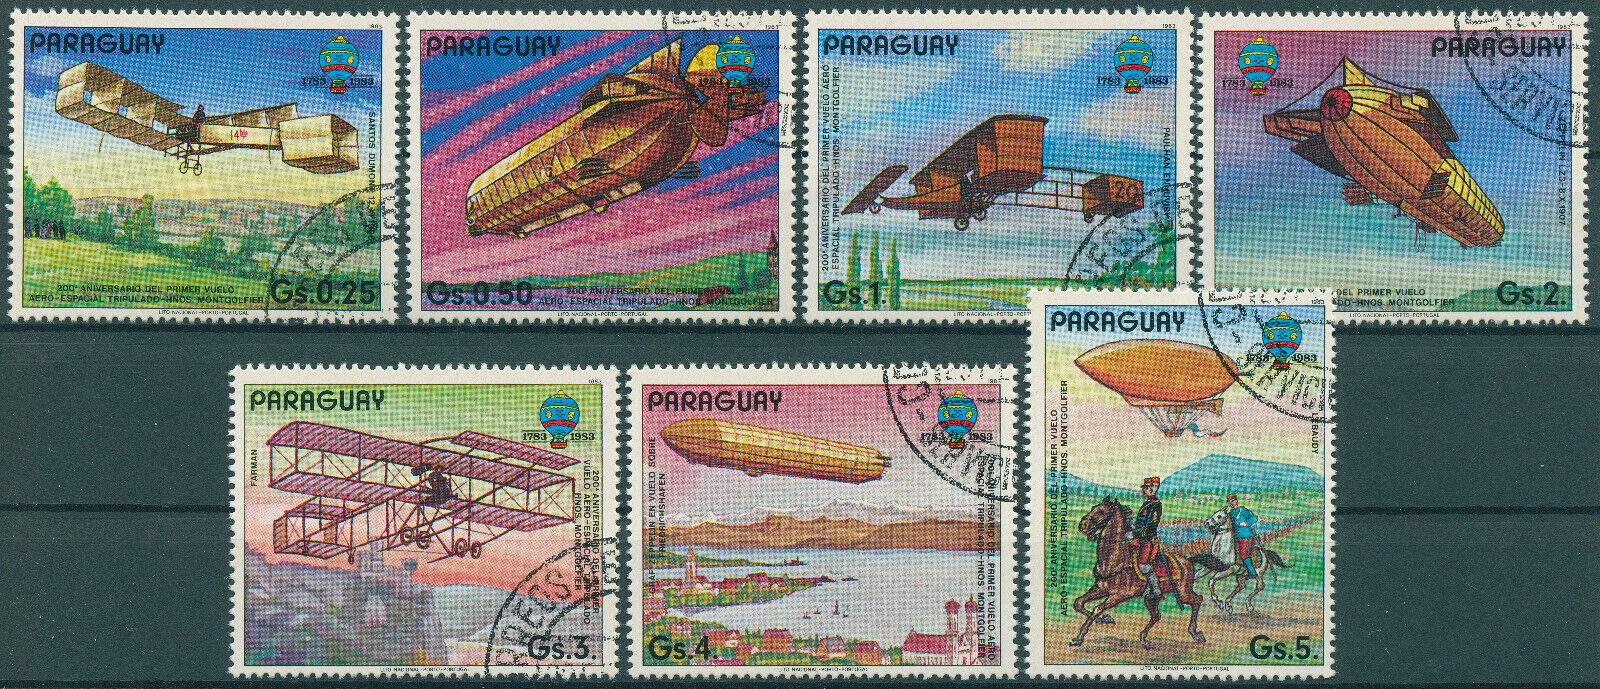 Paraguay 1983 CTO Aviation Stamps 1st Manned Flight Montgolfier Zeppelins 7v Set